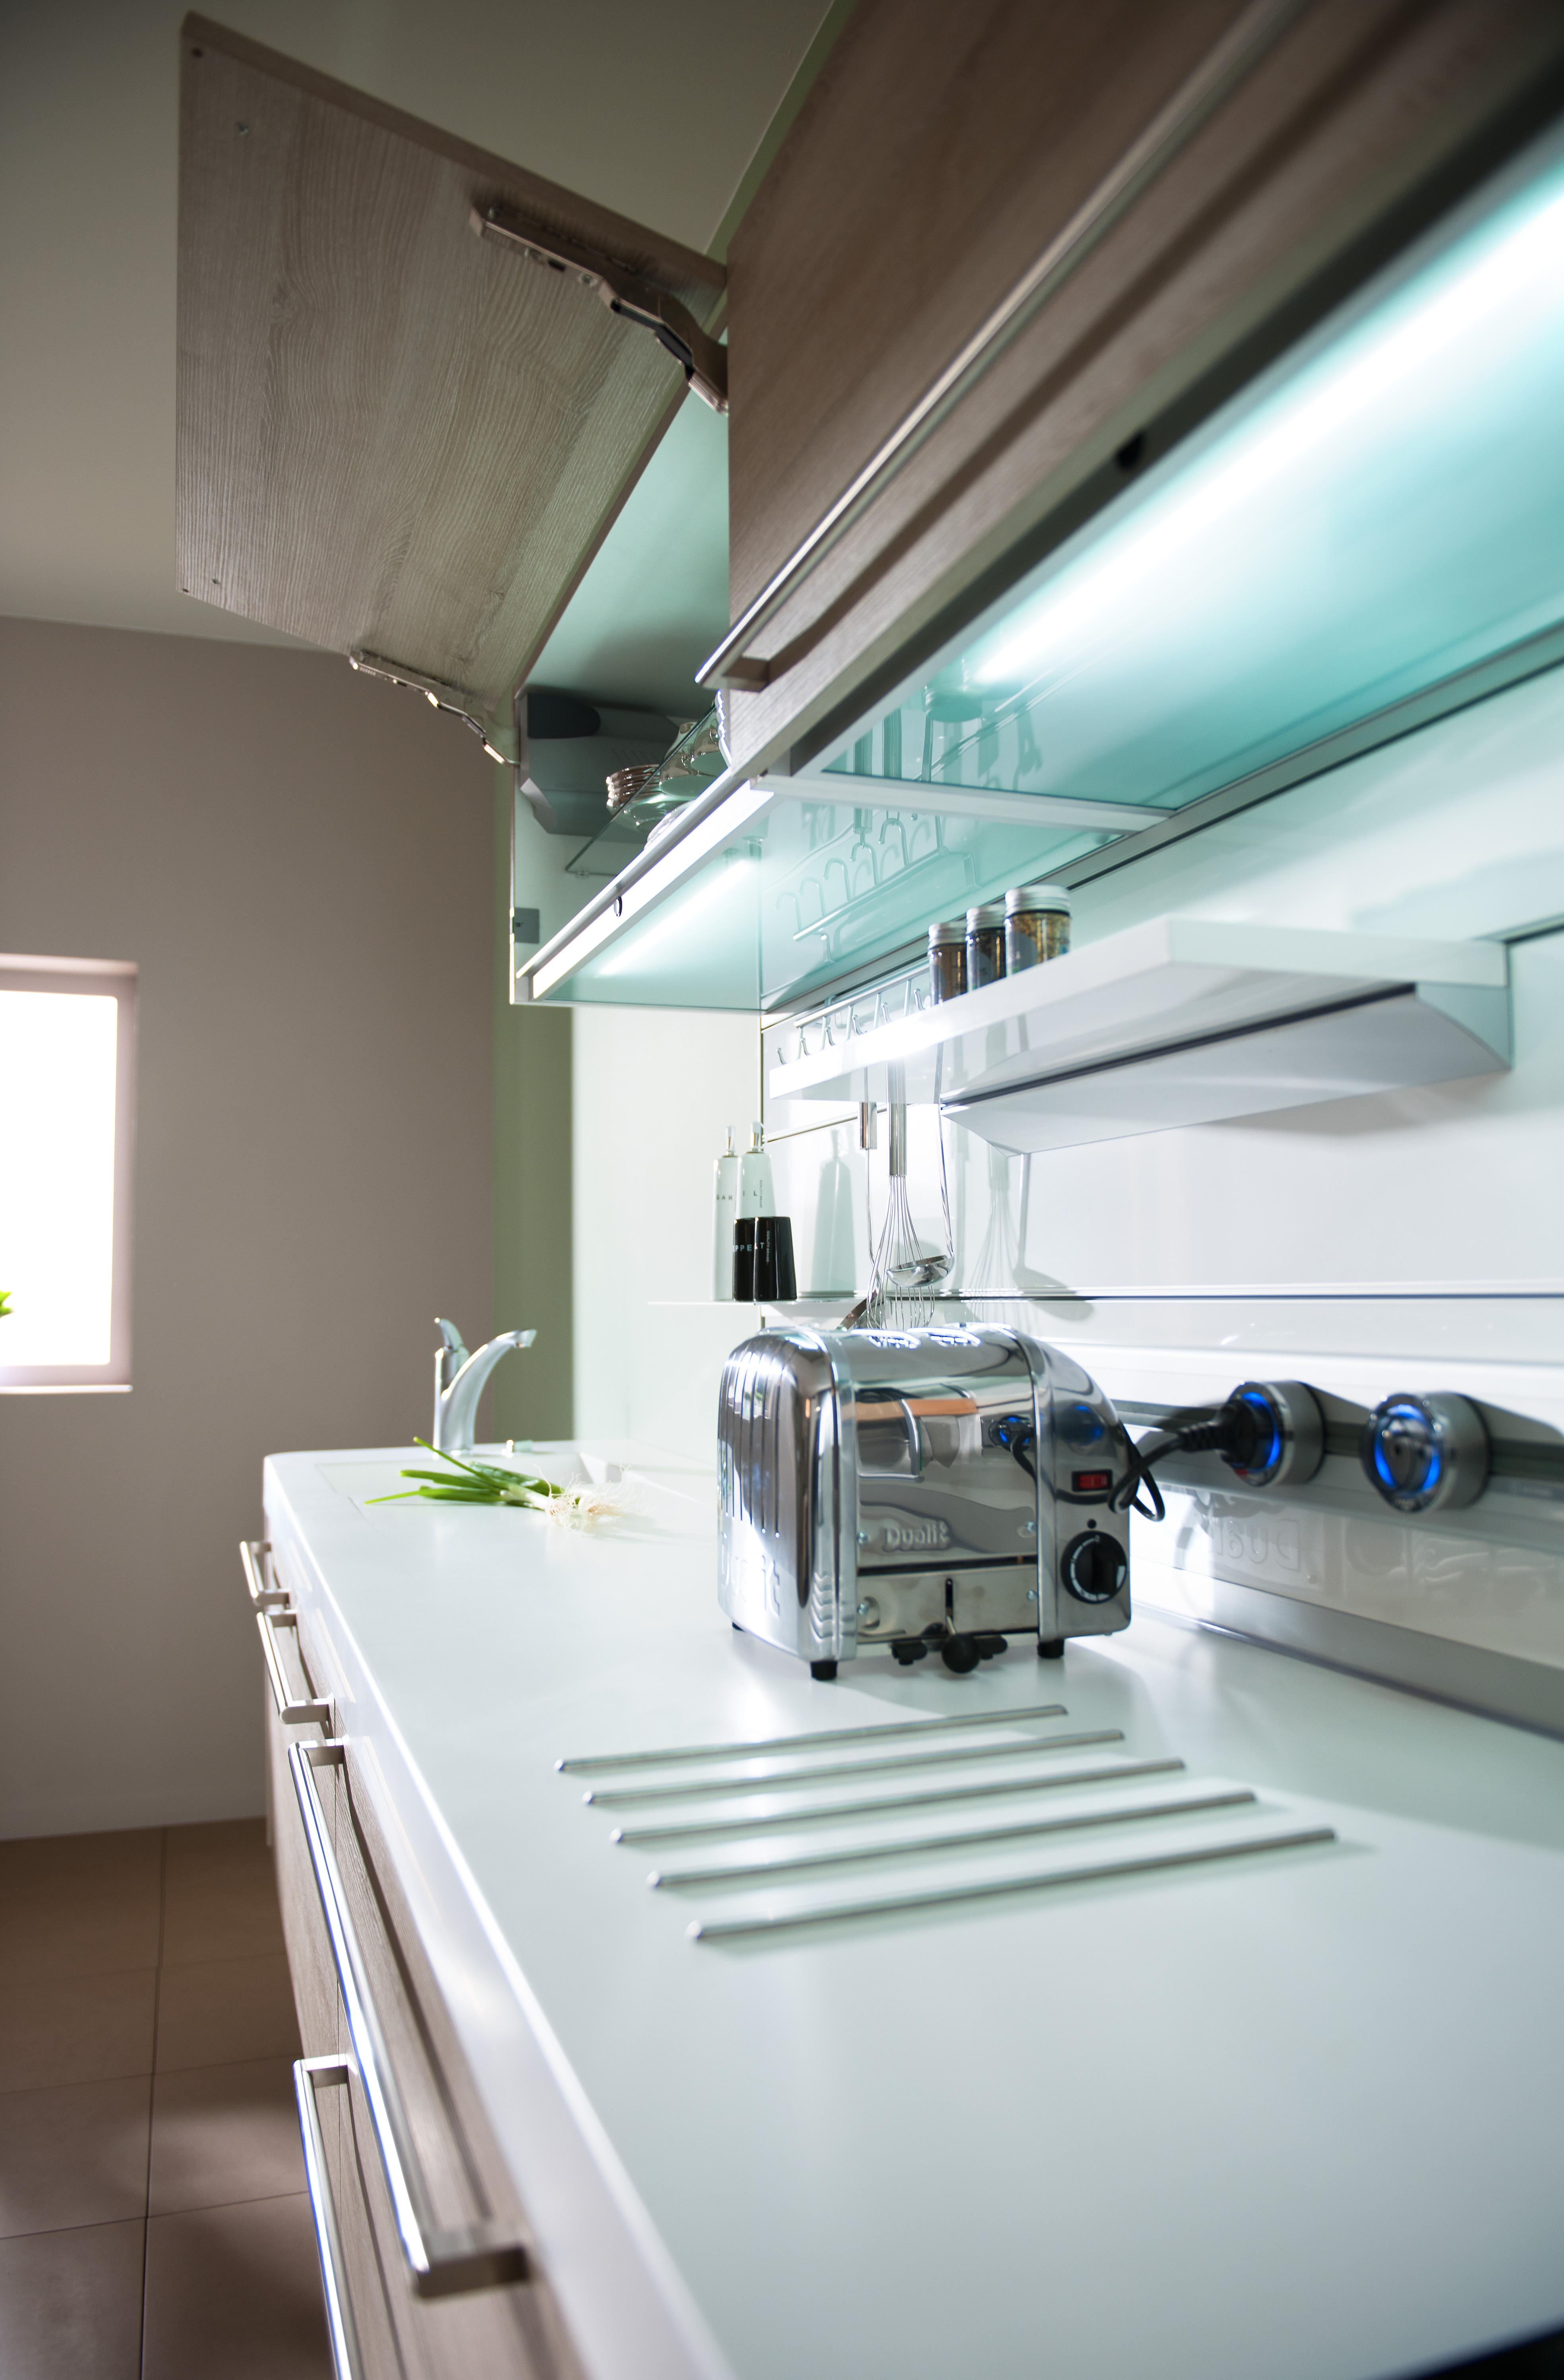 Immer mehr Küchengeräte? Lösung: Clevere Relingsysteme mit modernen Energie- und Steckdosenmanagement. 